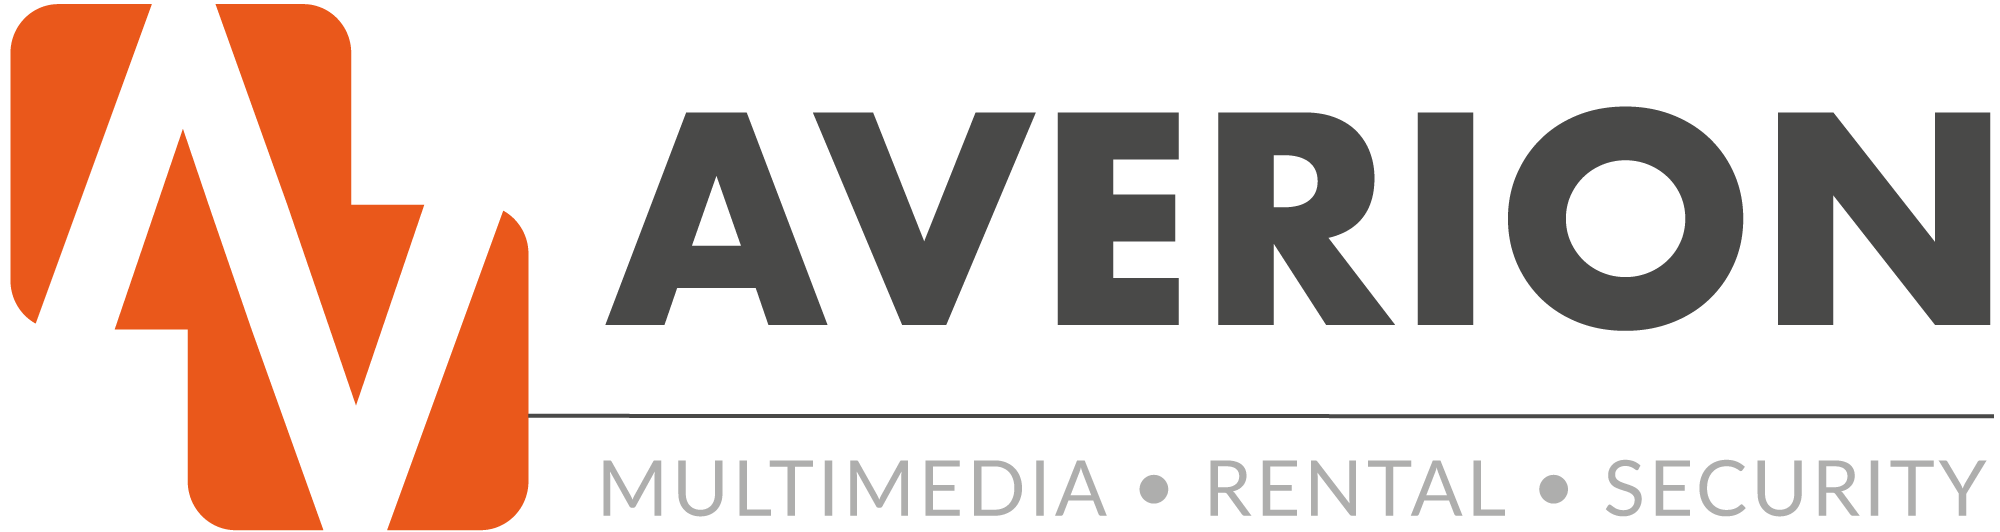 Welkom bij Averion Multimedia • Rental • Security